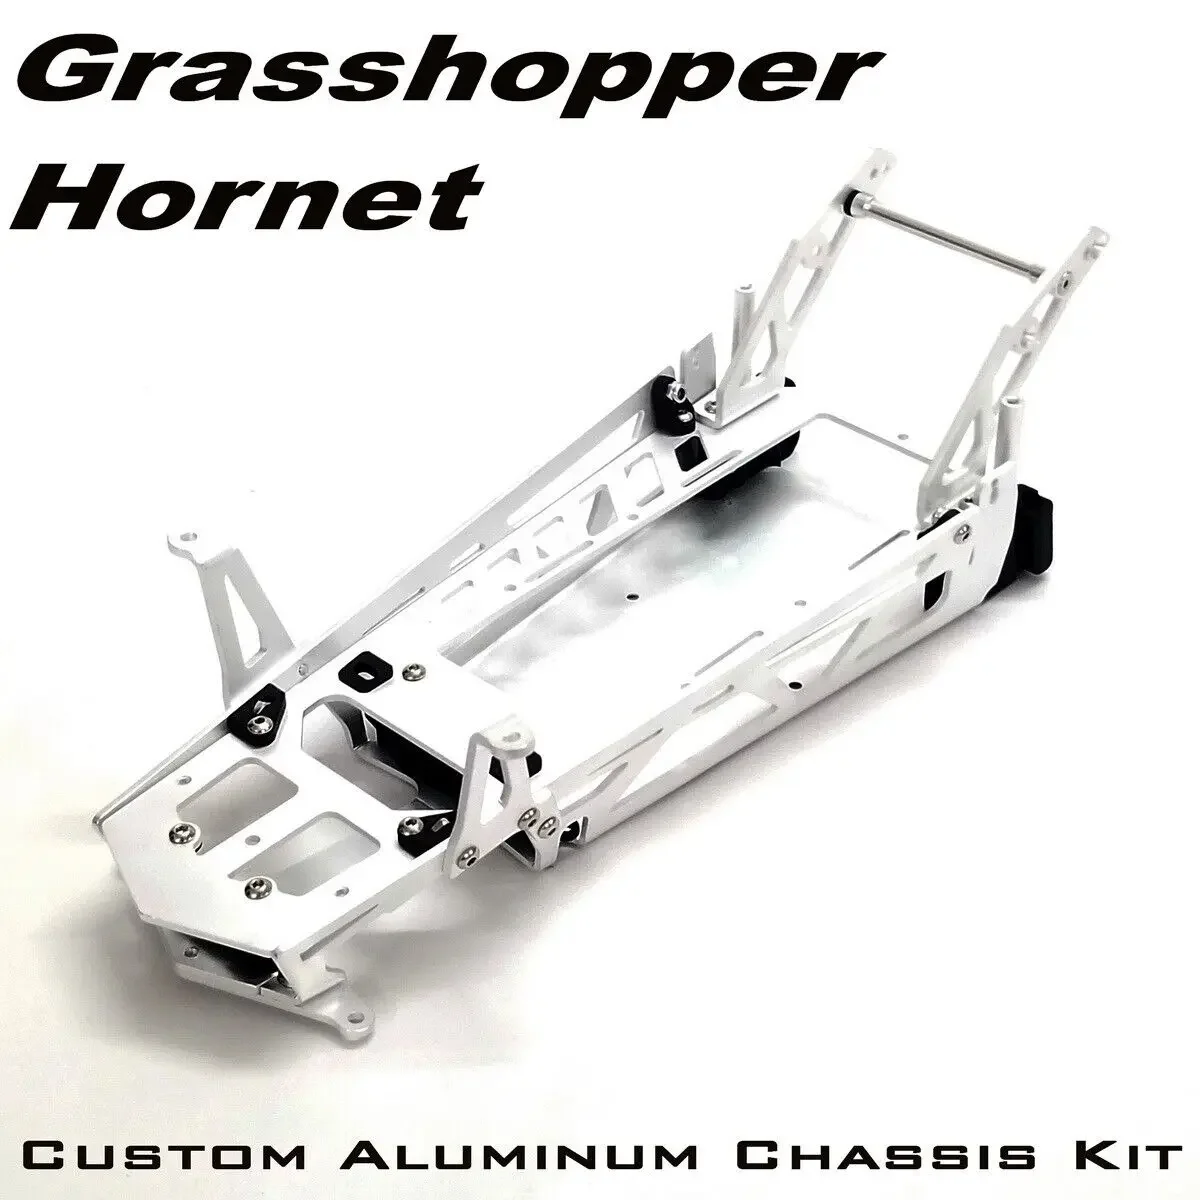 

Custom Aluminum Frame Chassis Kit for TAMIYA 1/10 Buggy Grasshopper/Hornet Chassis